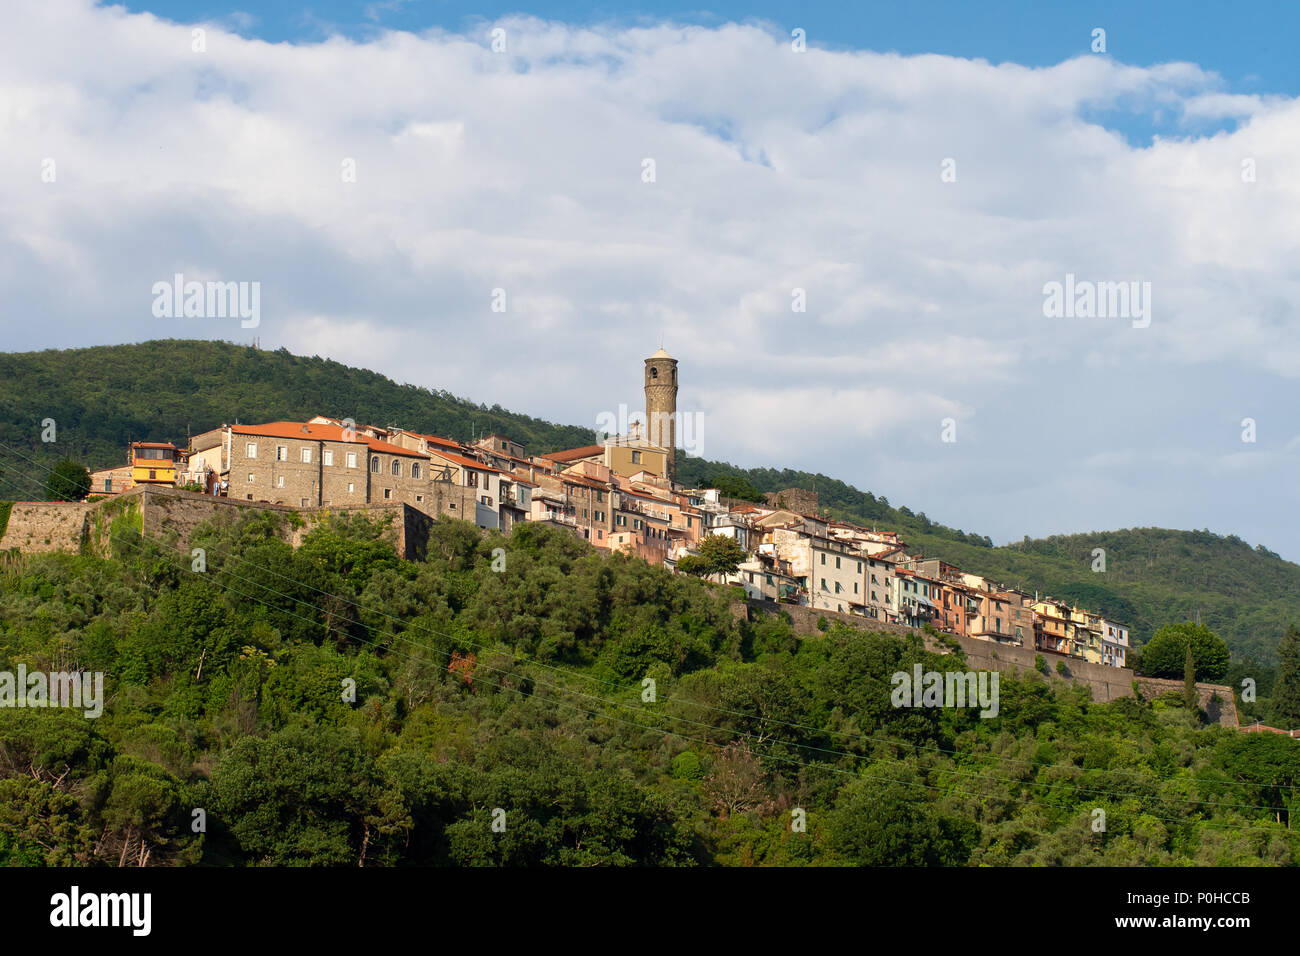 Colina típica aldea en Italia. Caprigliola cerca Aulla en el norte de la Toscana. Foto de stock